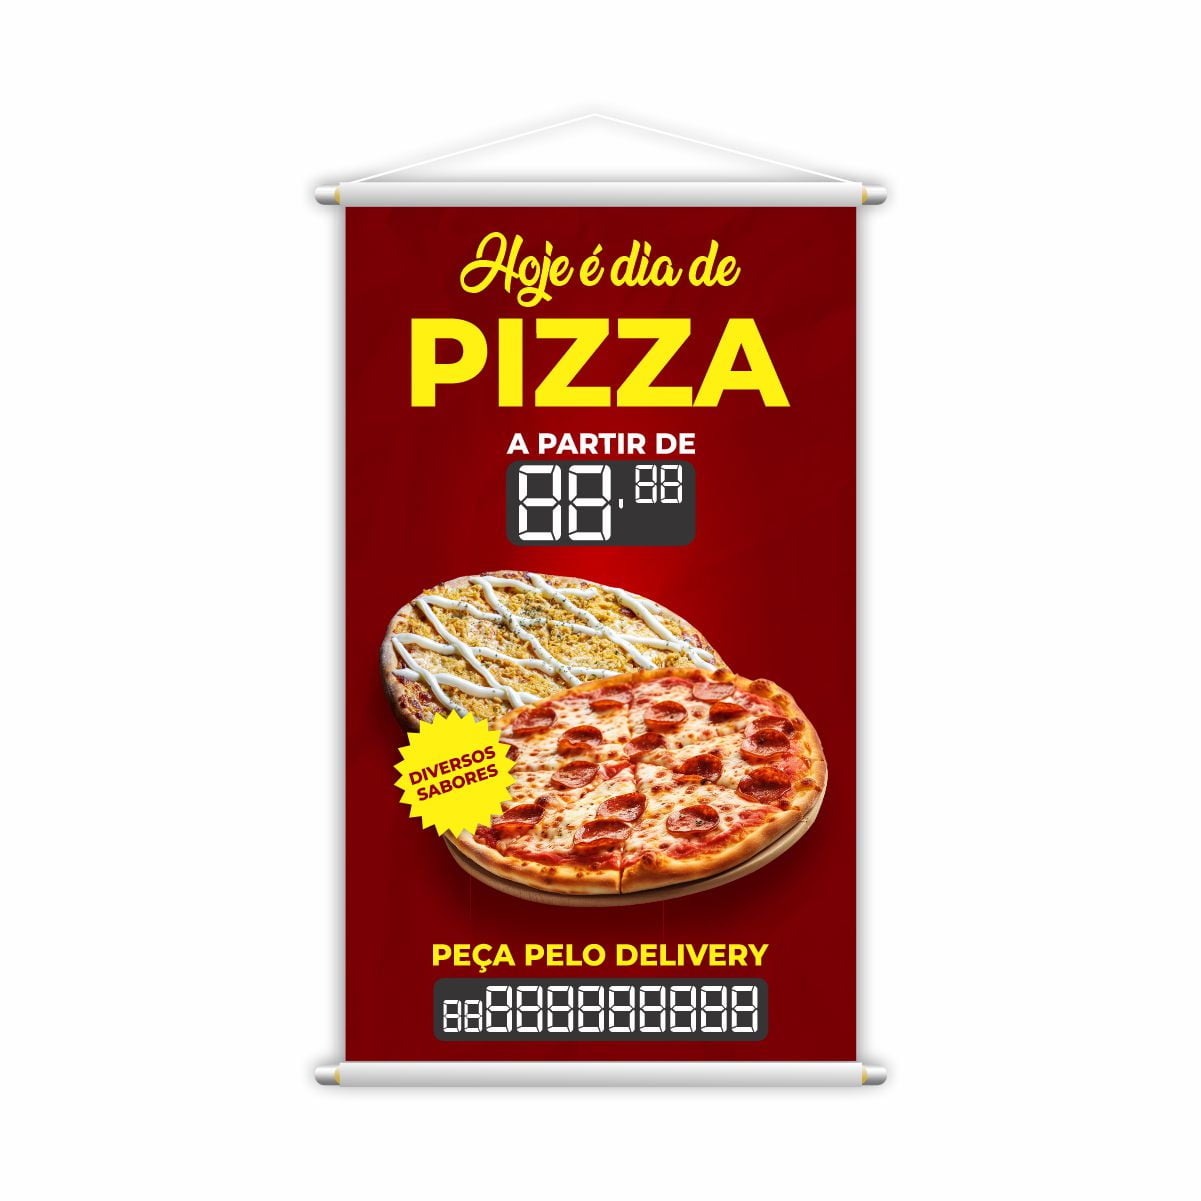 Semana da Pizza, alegria é com a Di Pizza, sabores por 25,00